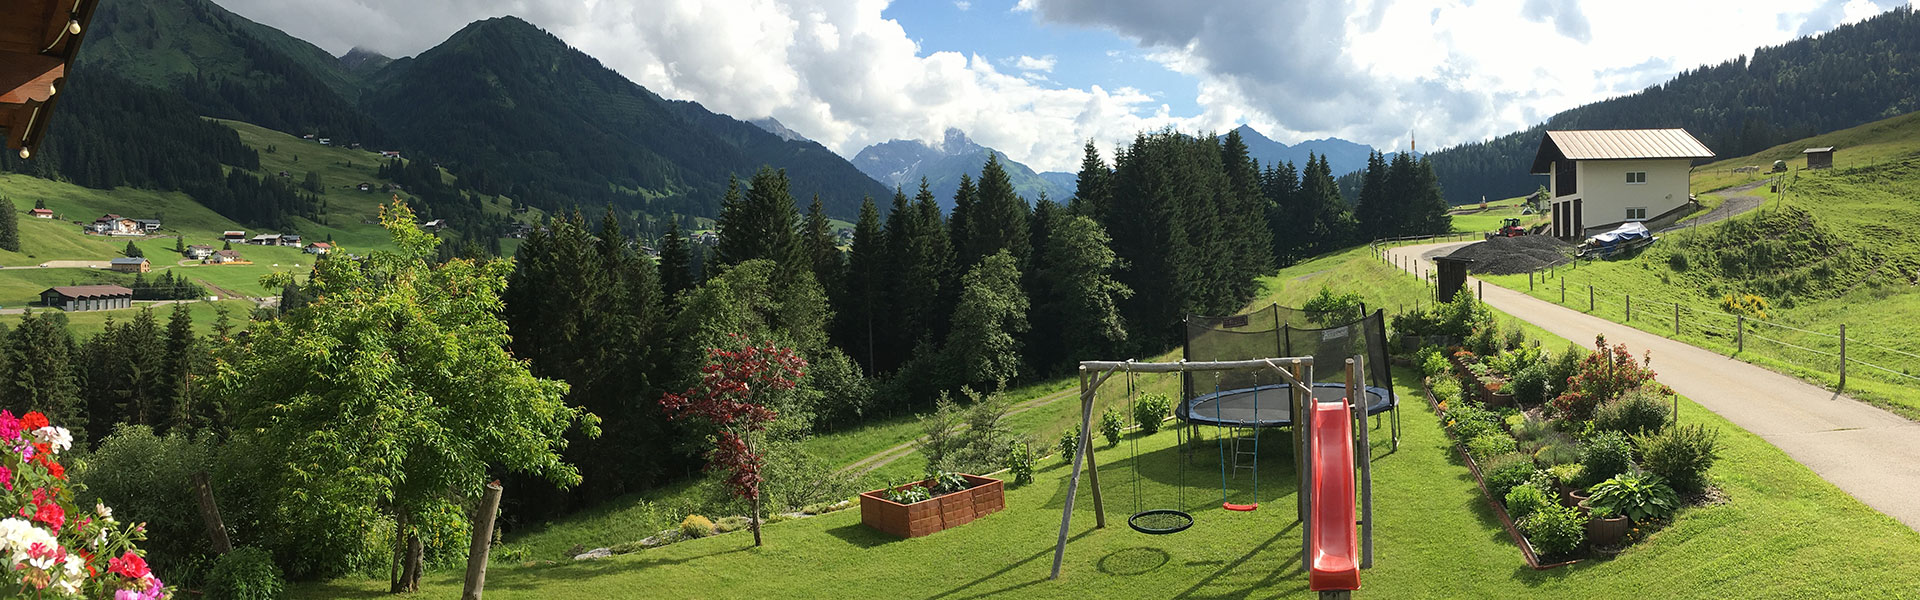 Ausblick vom Balkon der Ferienwohnung Widderstein in den Garten